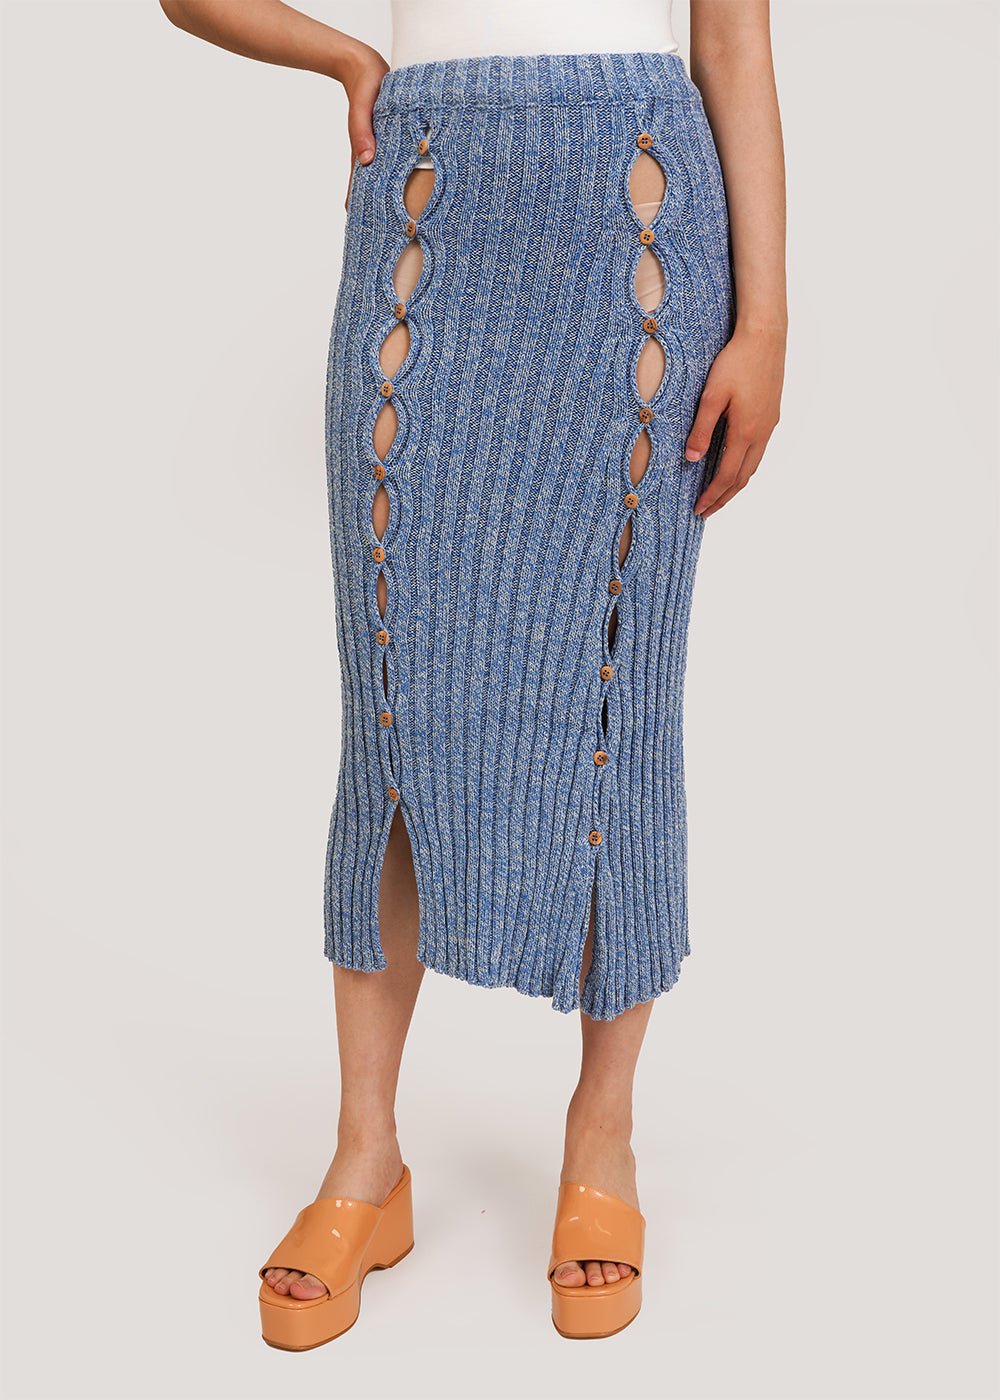 Loulou Skirt in Blue Melange by BASERANGE – New Classics Studios